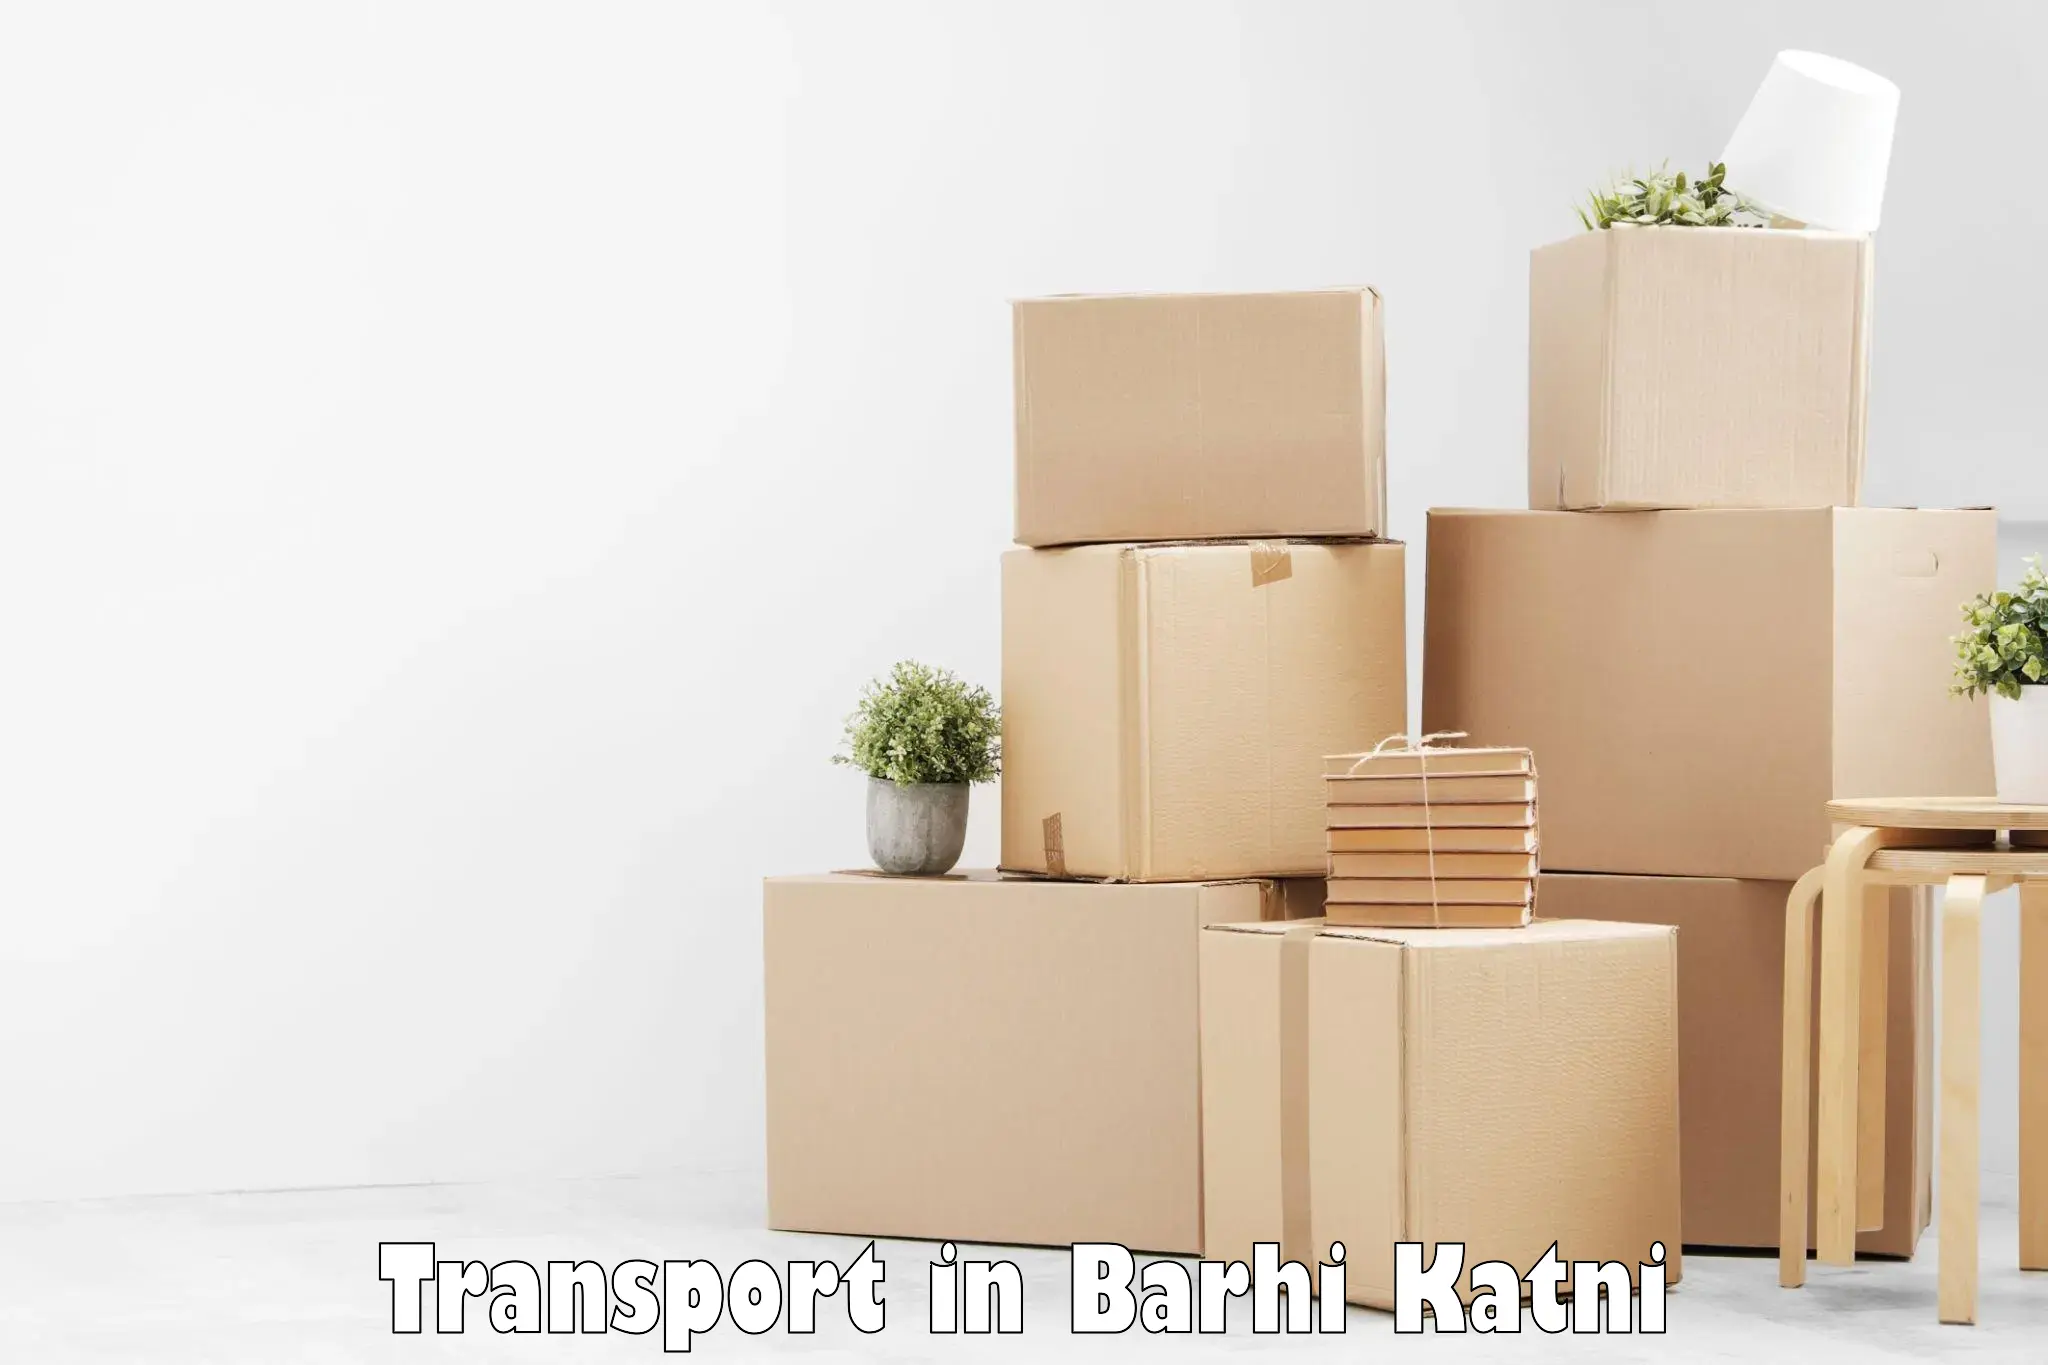 Daily parcel service transport in Barhi Katni